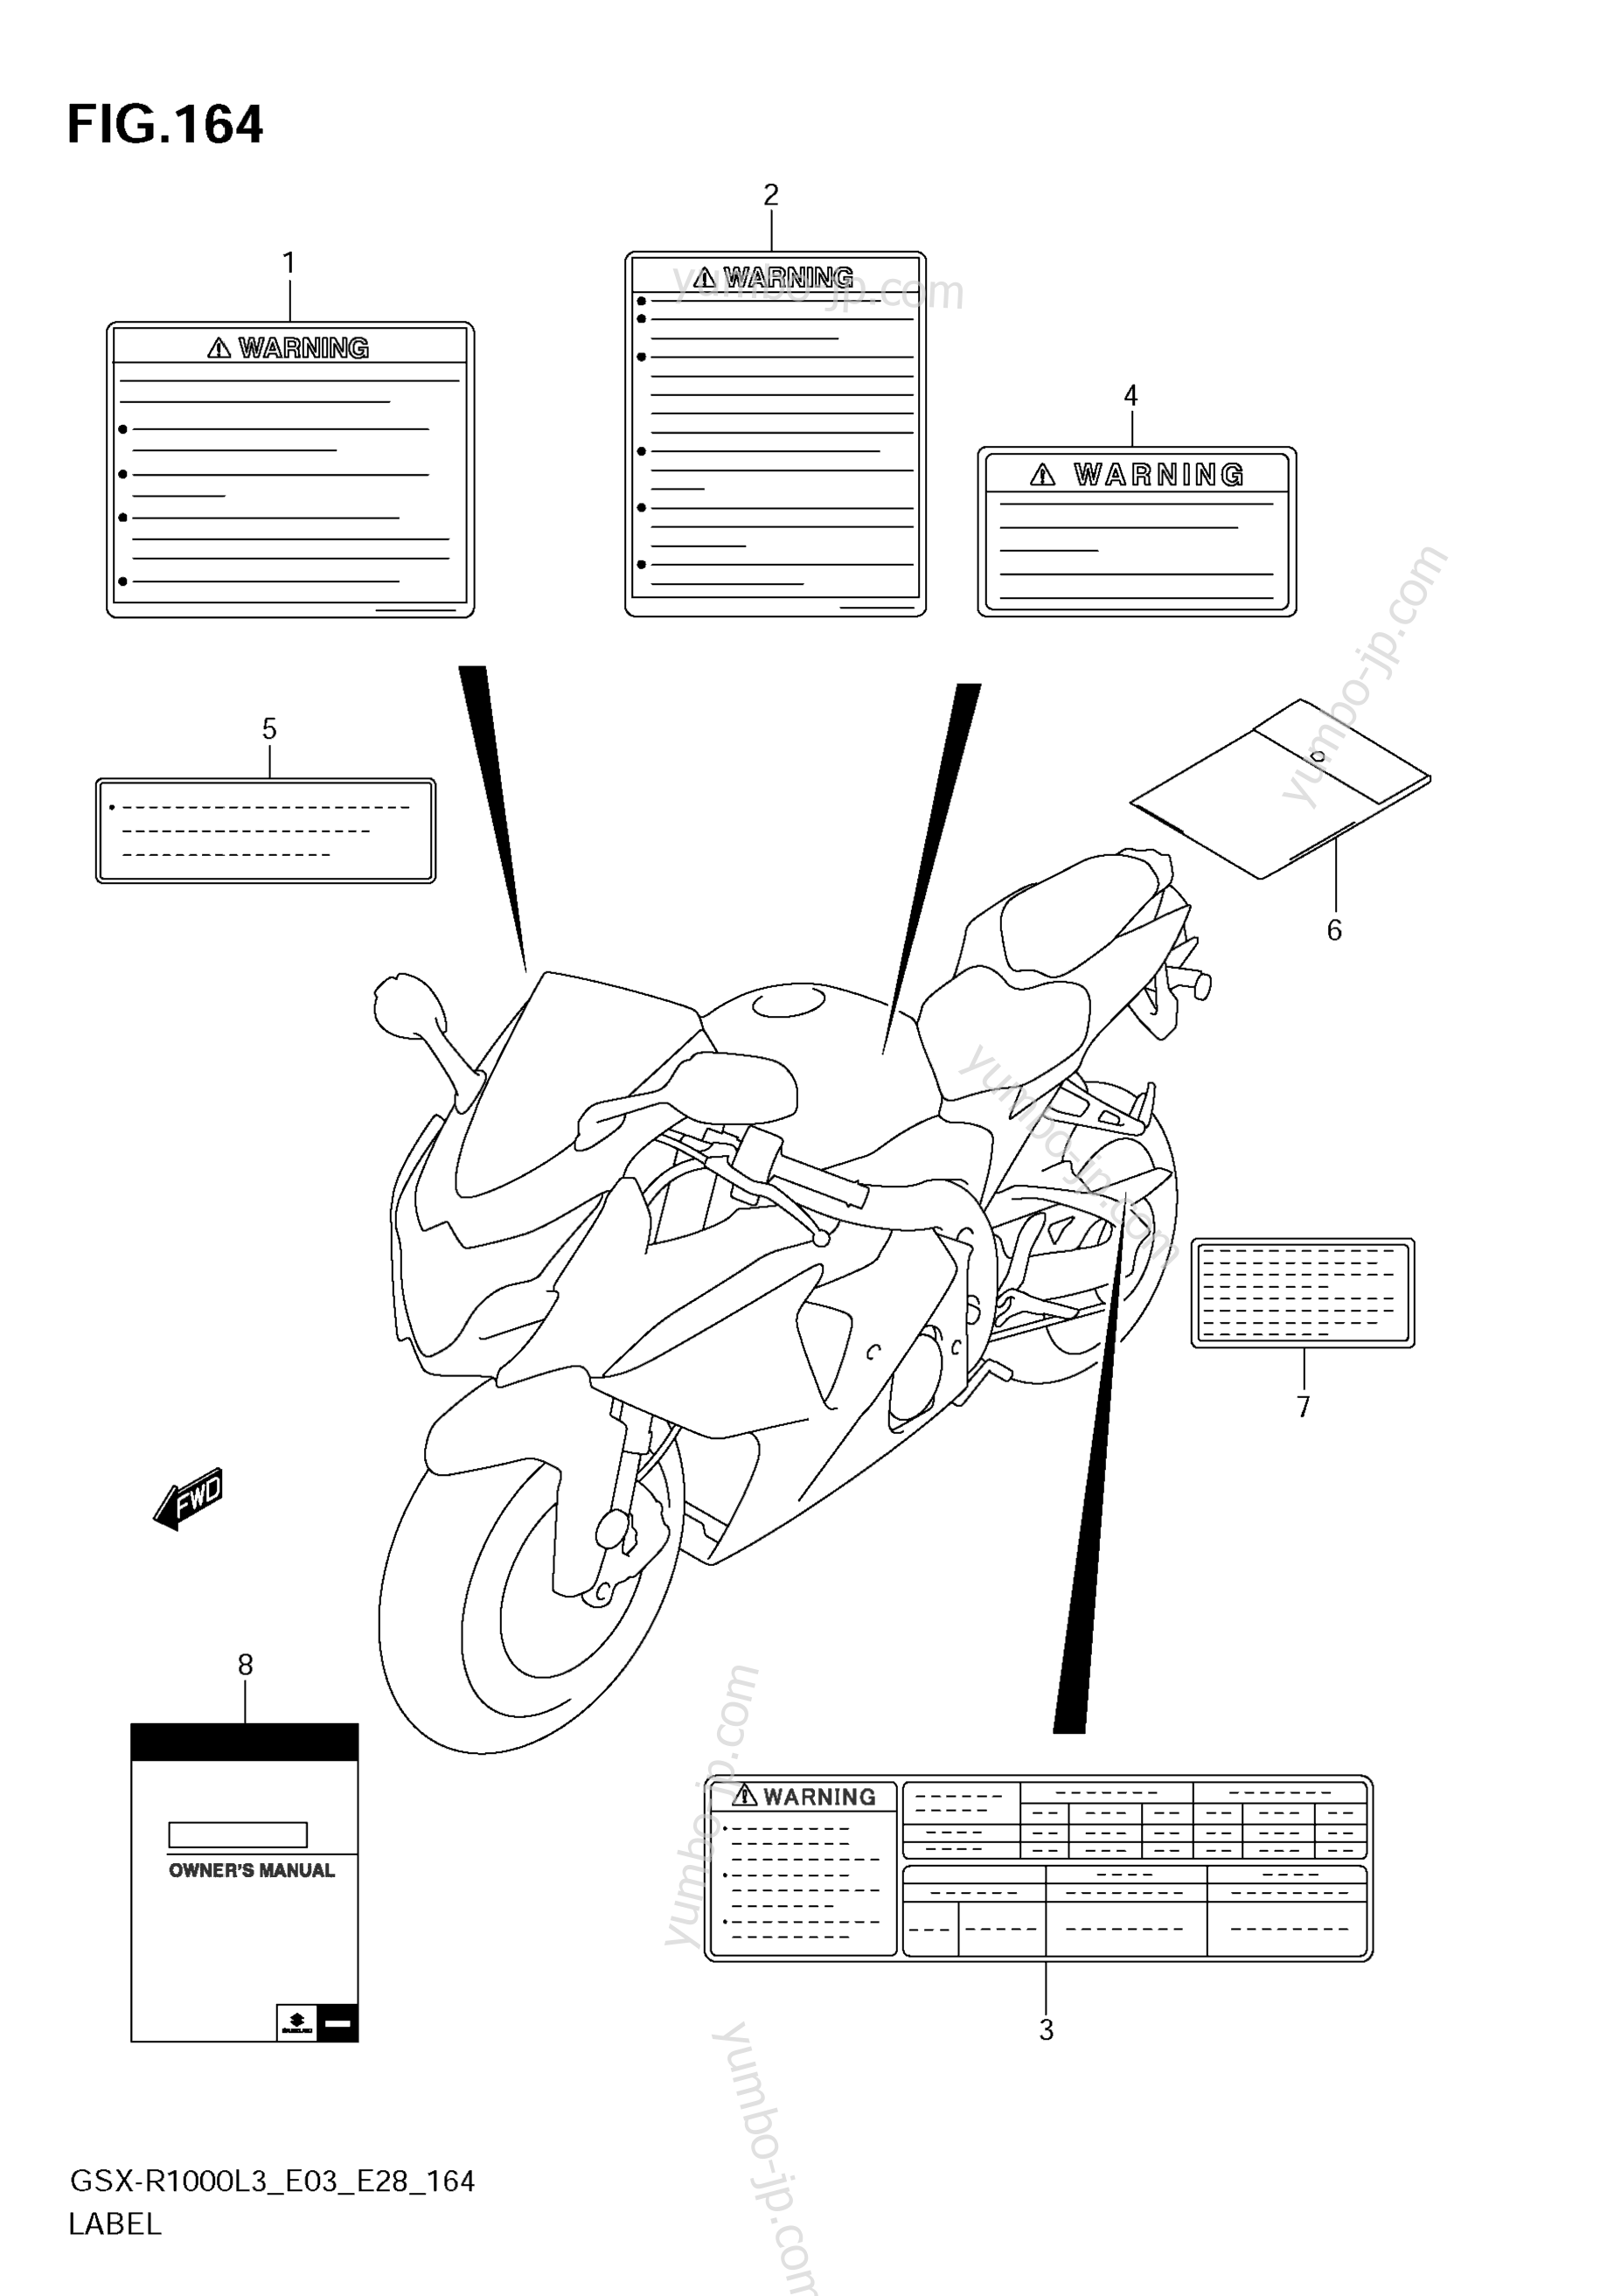 LABEL (GSX-R1000ZL3 E03) for motorcycles SUZUKI GSX-R1000 2013 year